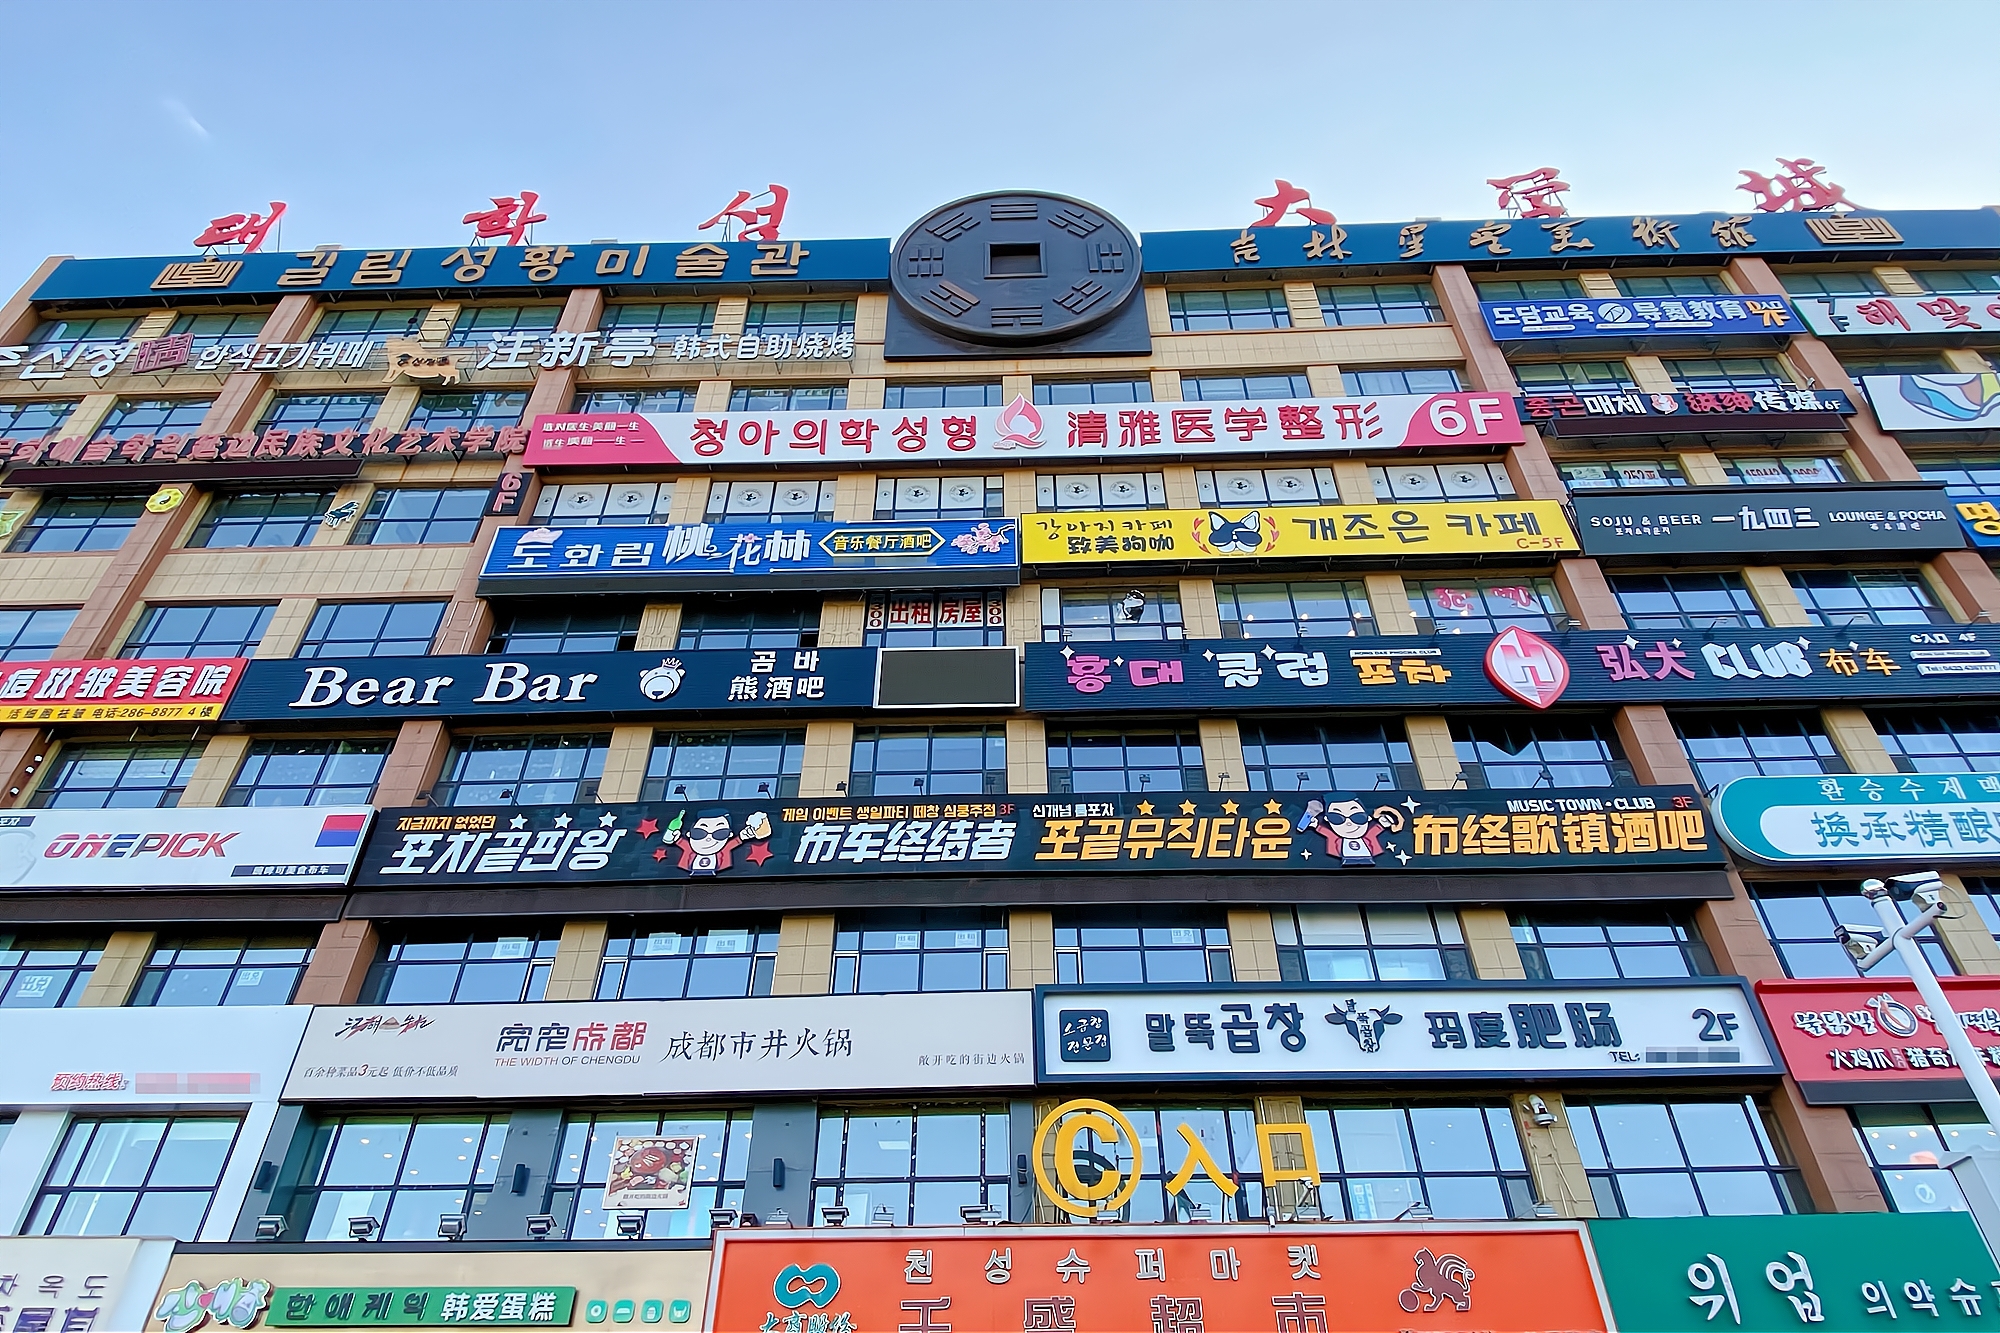 延吉最怪的楼整座楼挂满了双语牌子游客表示像到了韩国